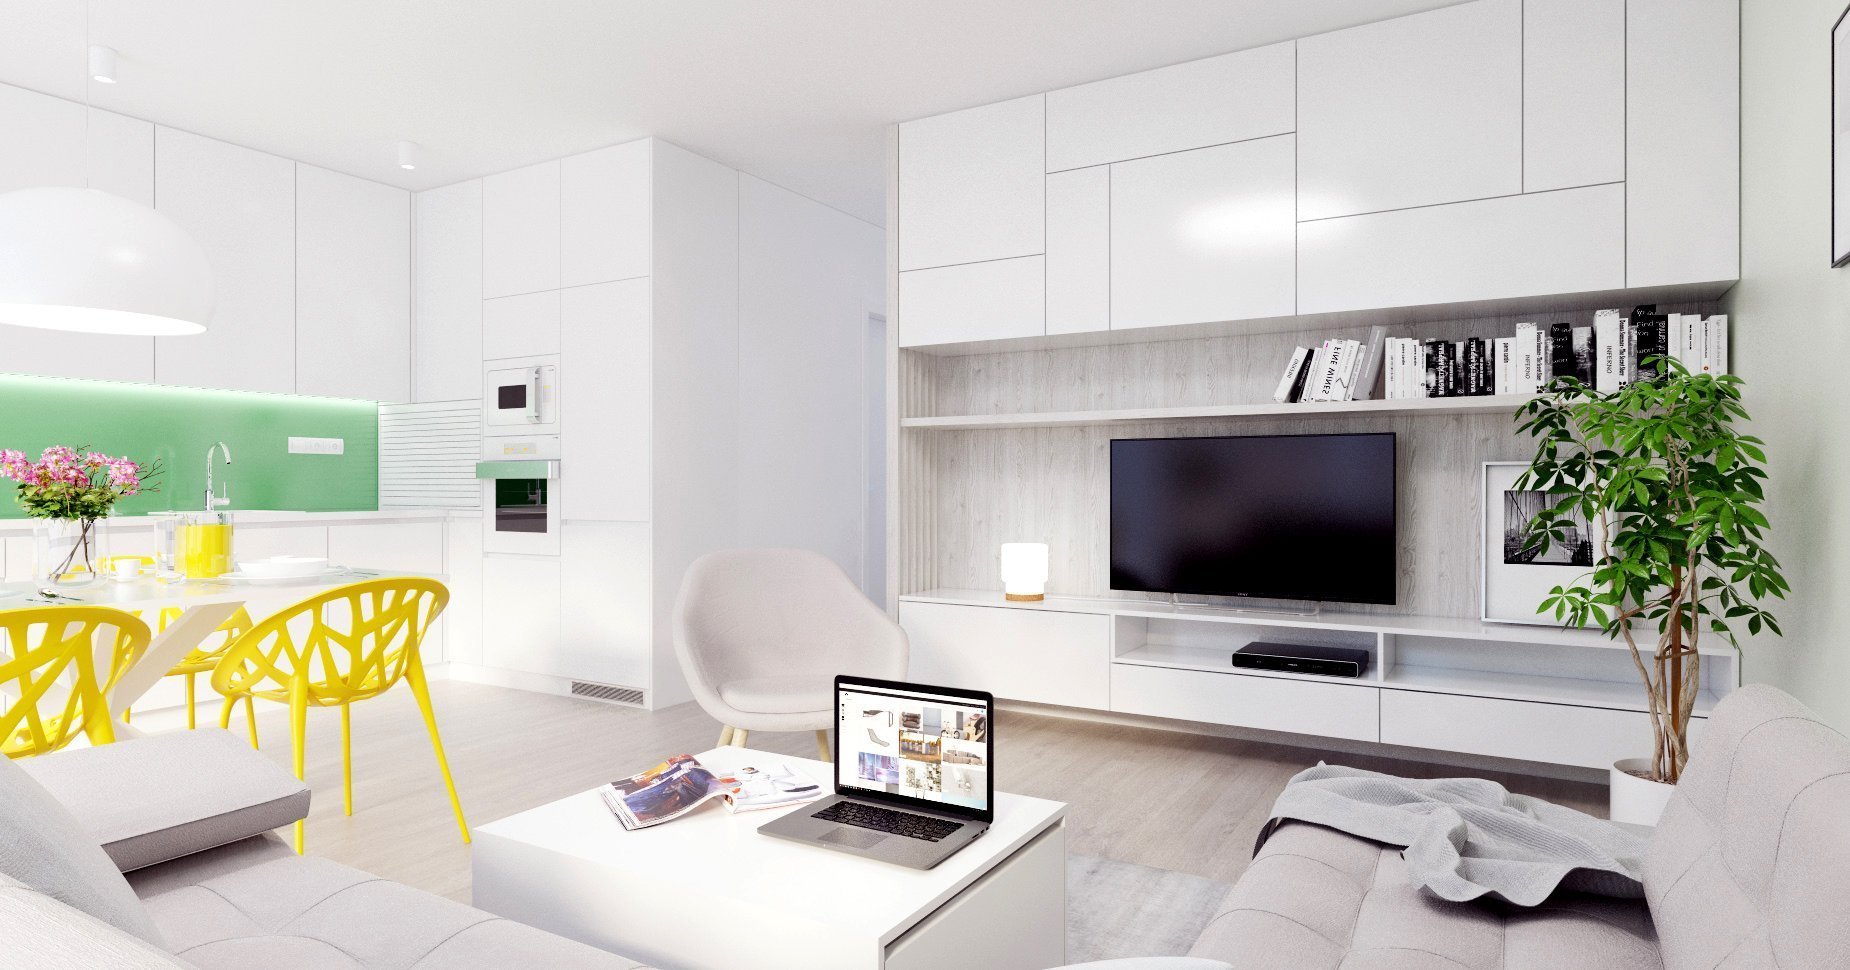 Svieži, dynamický a hravý - taký je tento interiér bytu v projekte Bory Bývanie.
4-izbový byt s výbornou dispozíciou je charakteristický spojenou dennou zónou…